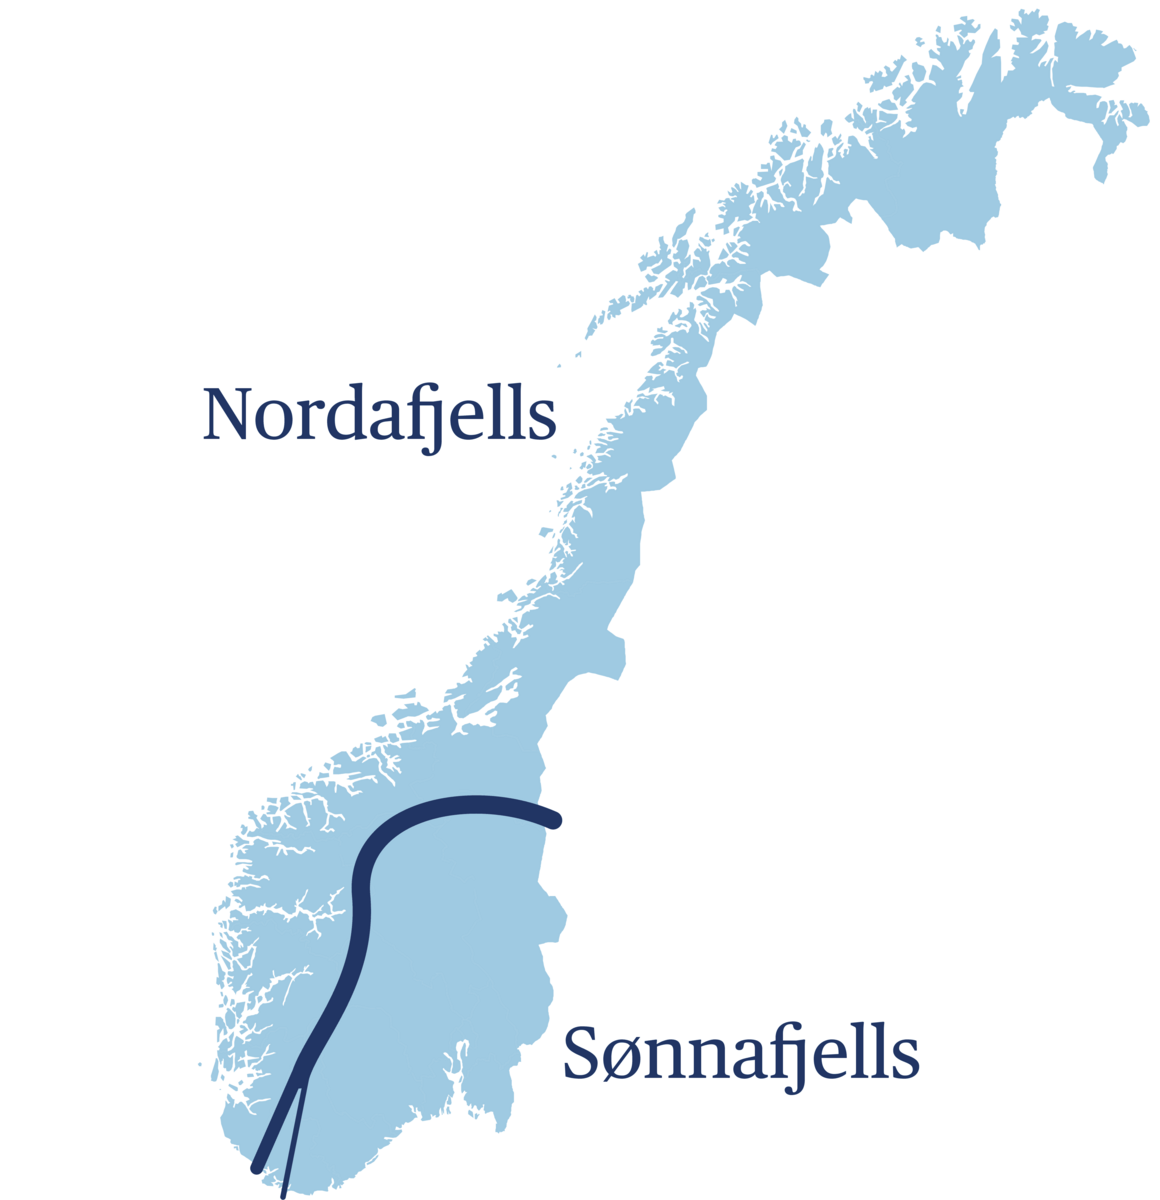 Nordafjells og sønnafjells fra middelalderen